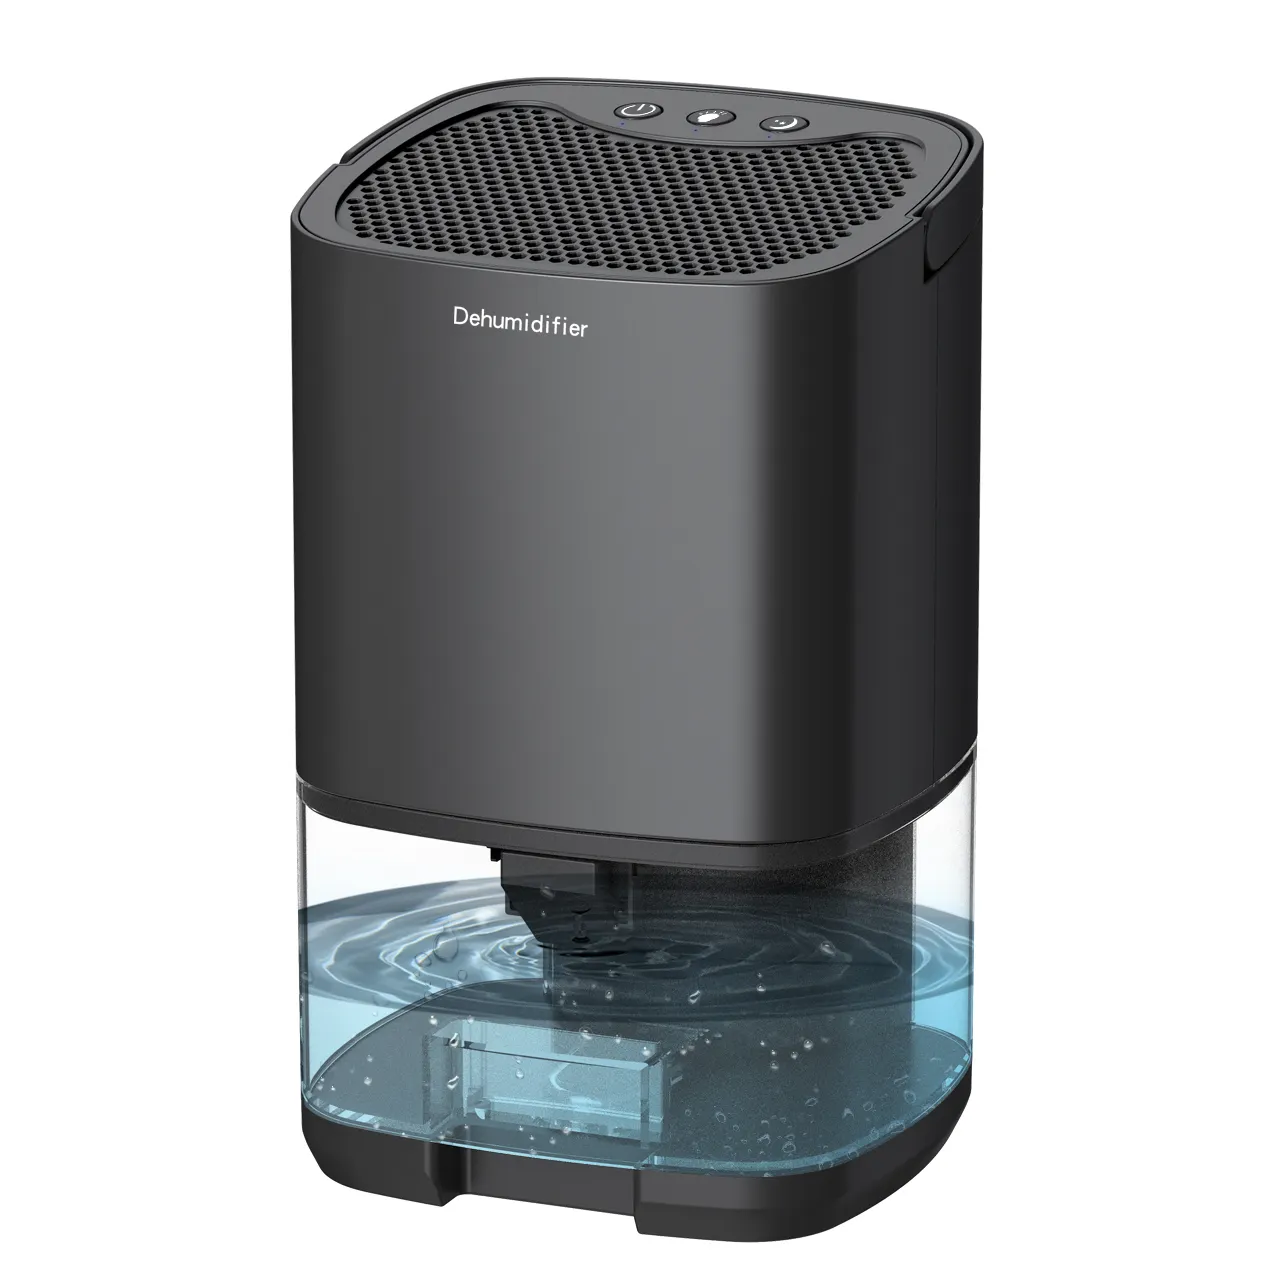 Dehumidifier udara portabel Mini, Pengering udara elektrik kebisingan rendah 7 LED untuk kantor rumah ruang tamu dapur kamar mandi 1L